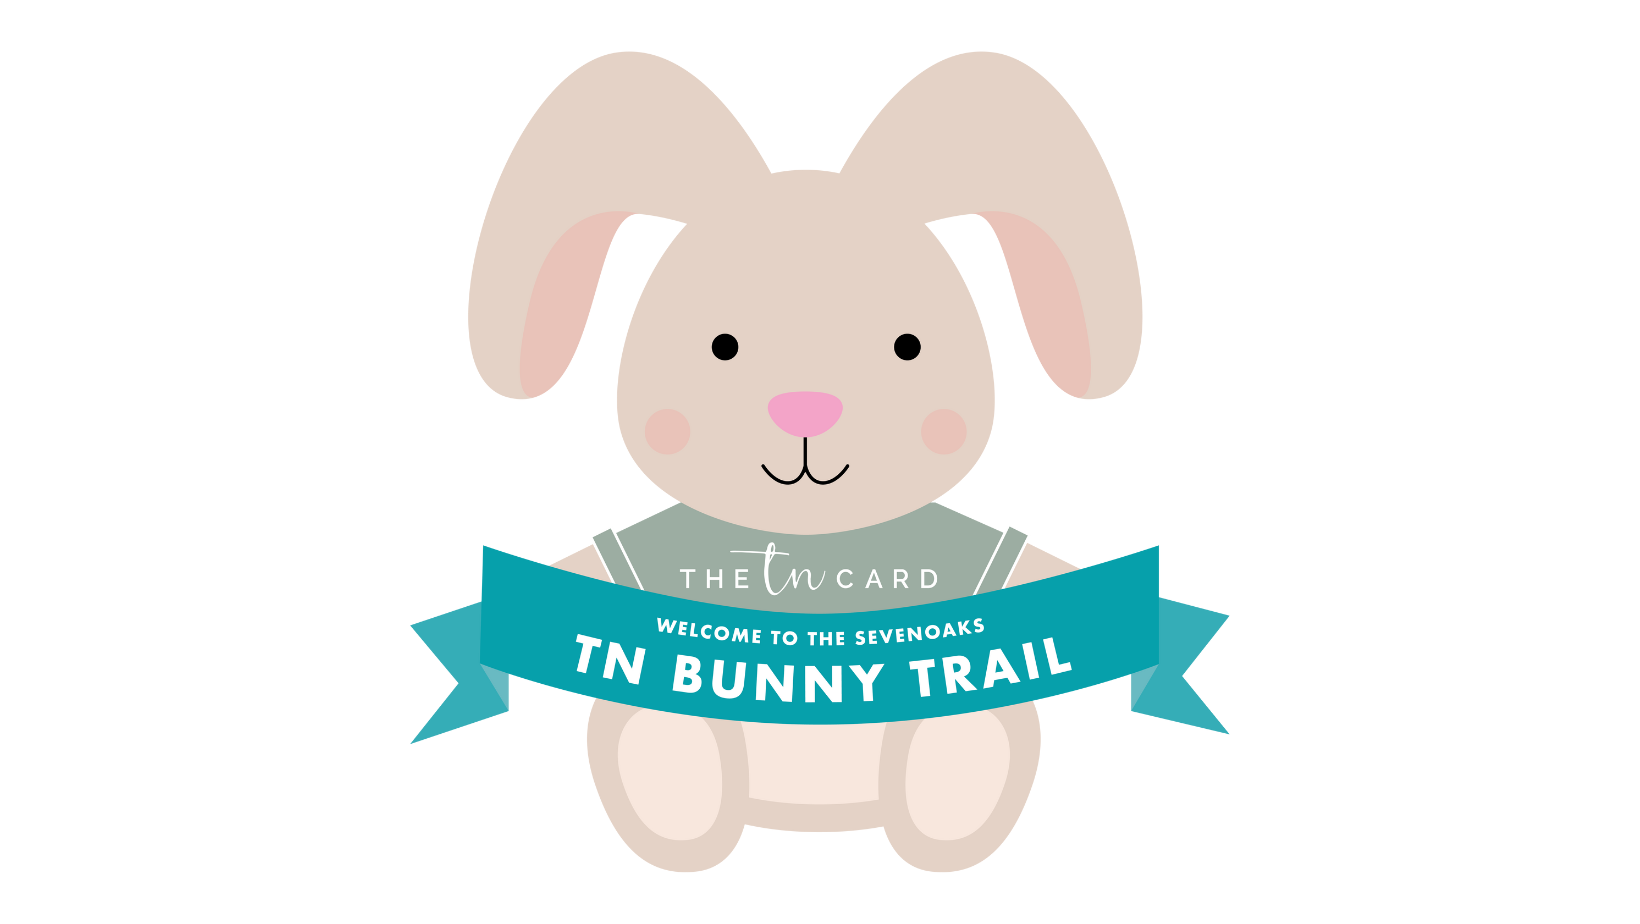 The TN Bunny Trail Sevenoaks